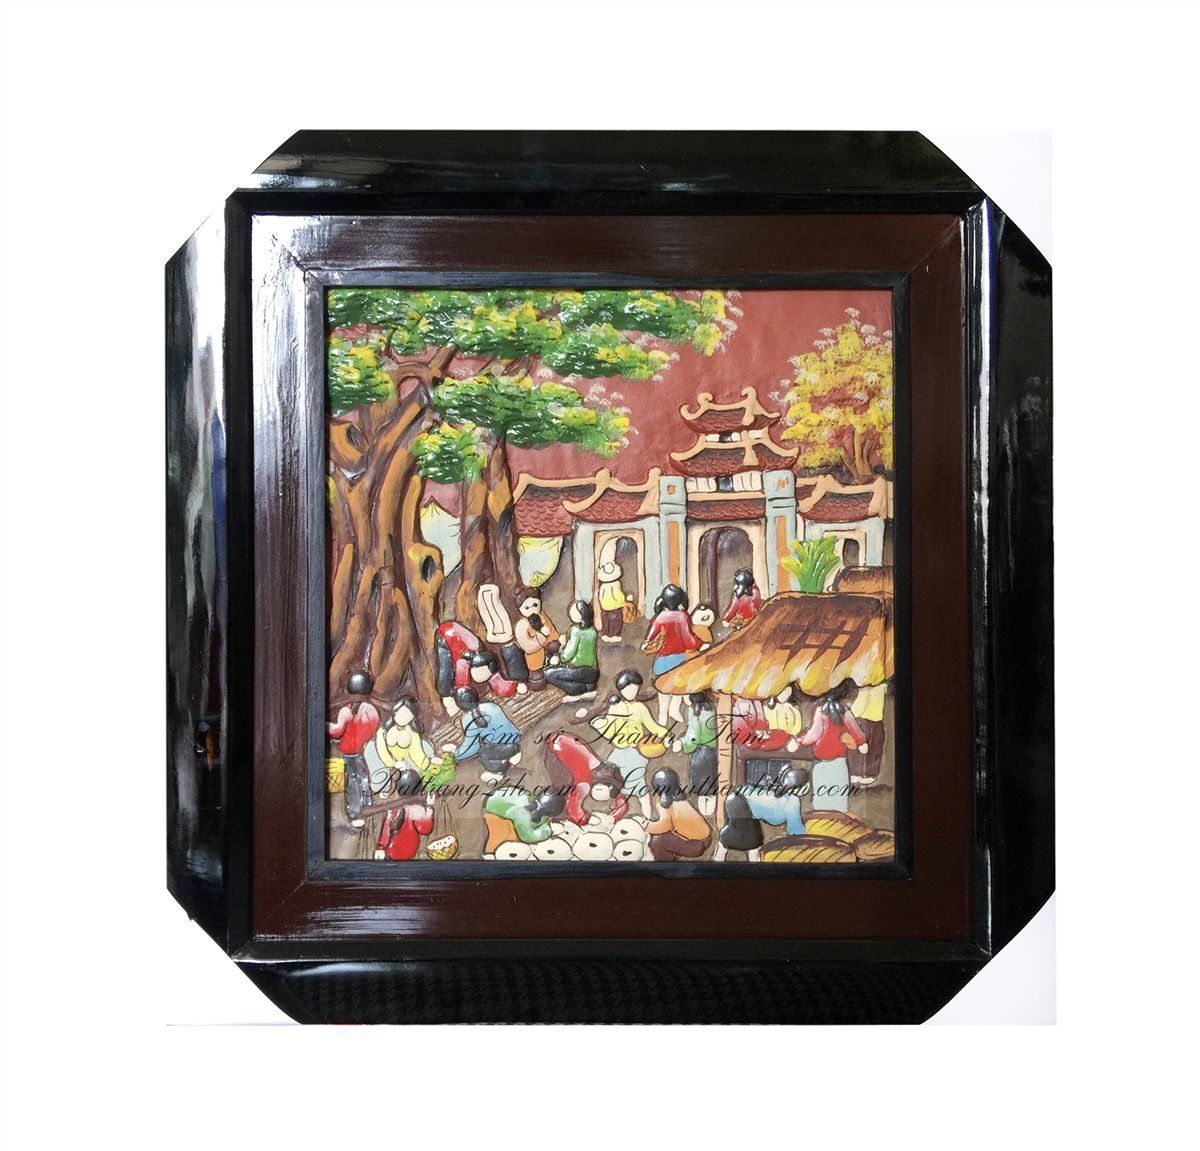 Bán tranh gốm sứ Bát Tràng cảnh họp chợ quê đông đúc ngày tết, tranh gốm đất nung màu đỏ